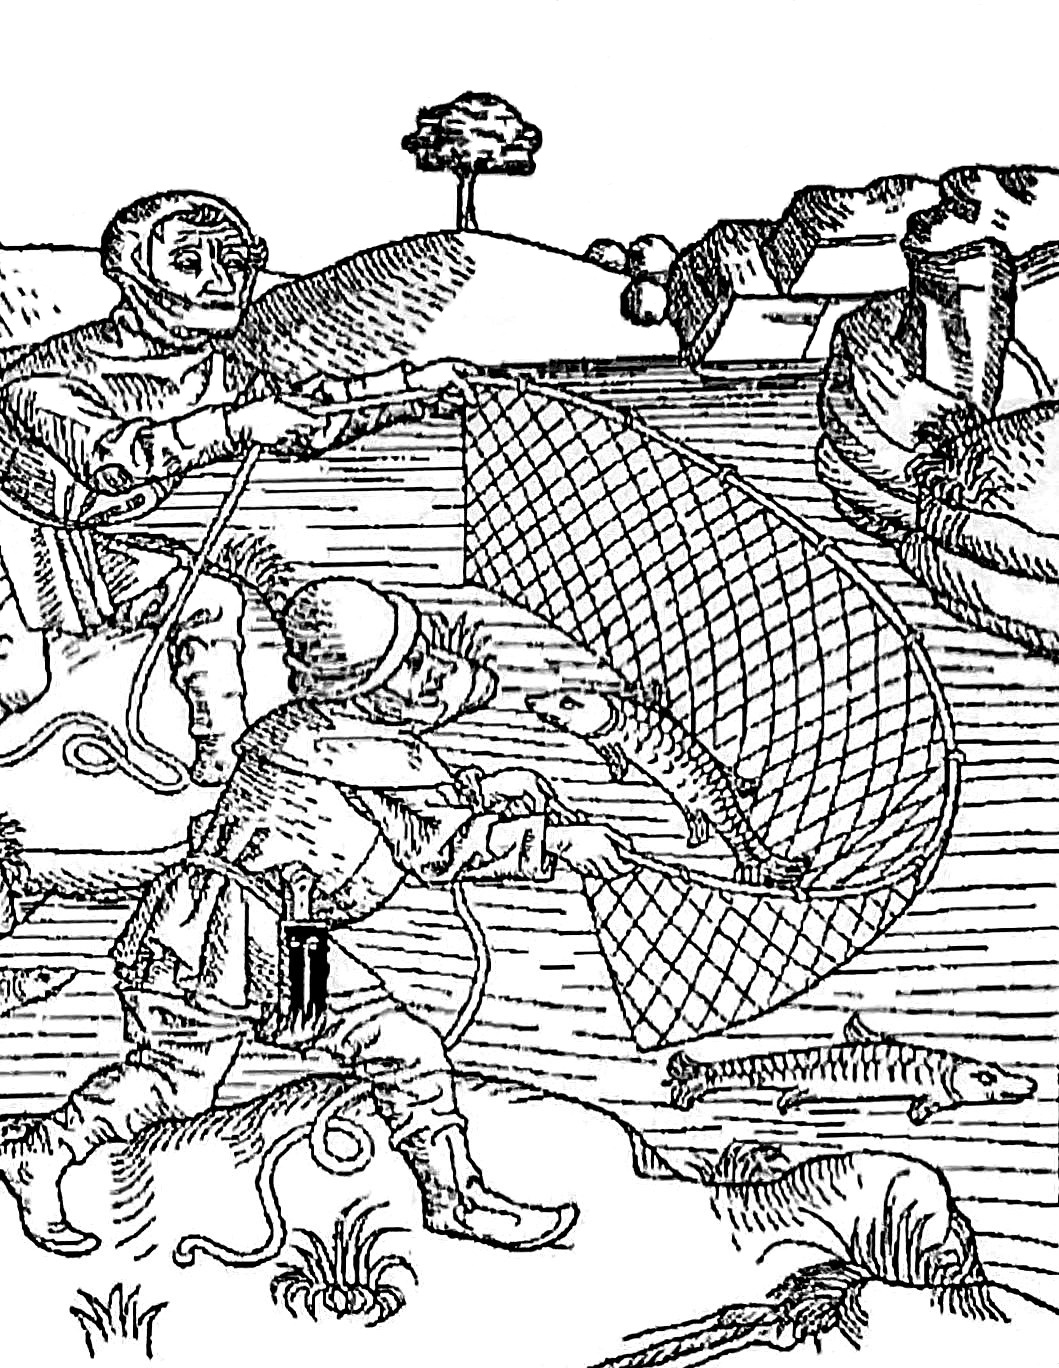 Сцена рыбалки. С гравюры XVII века.